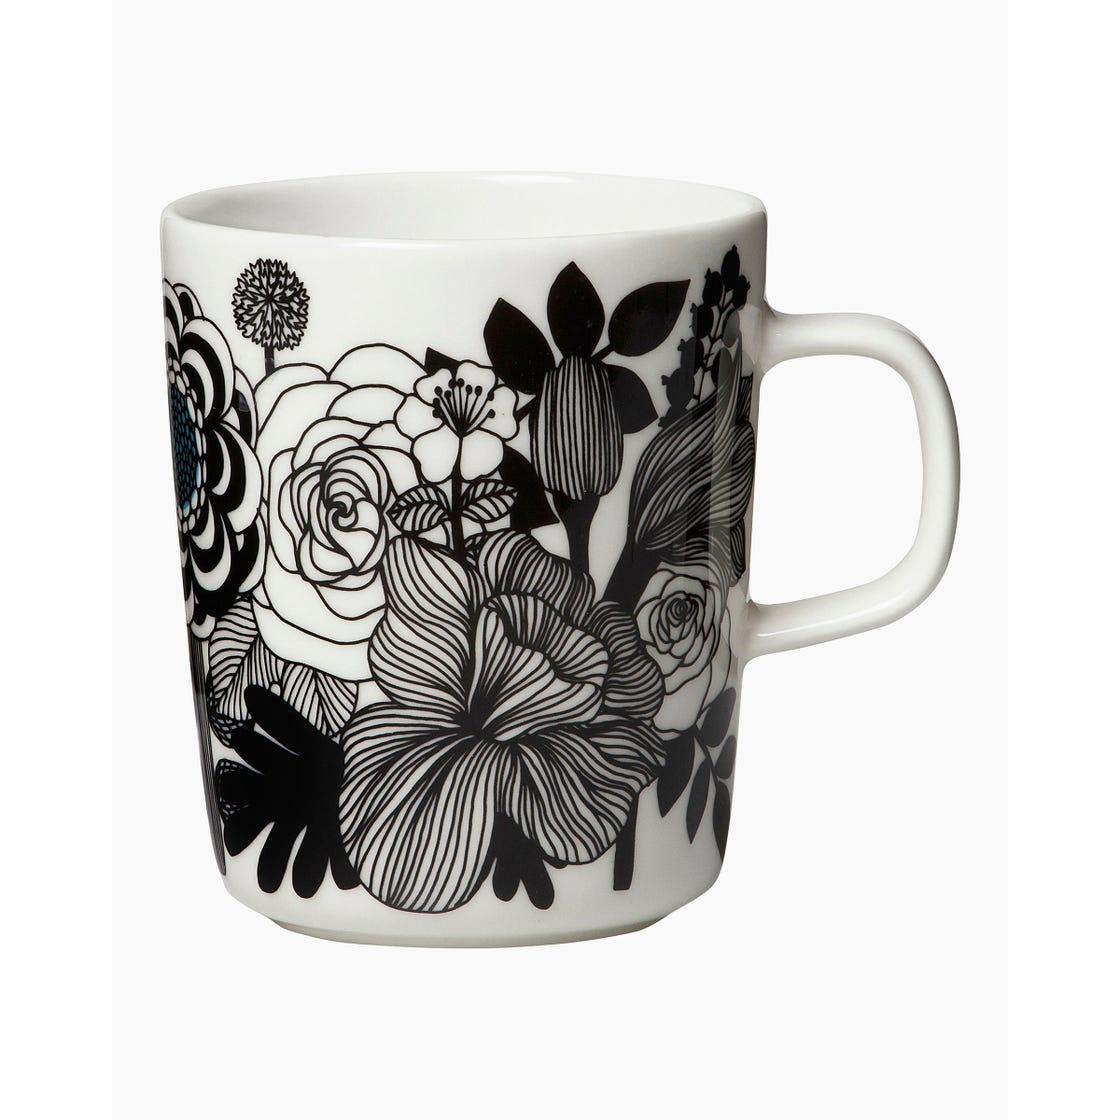 Oiva / Siirtolapuutarha mug 250 ml | White, Black, Turquoise